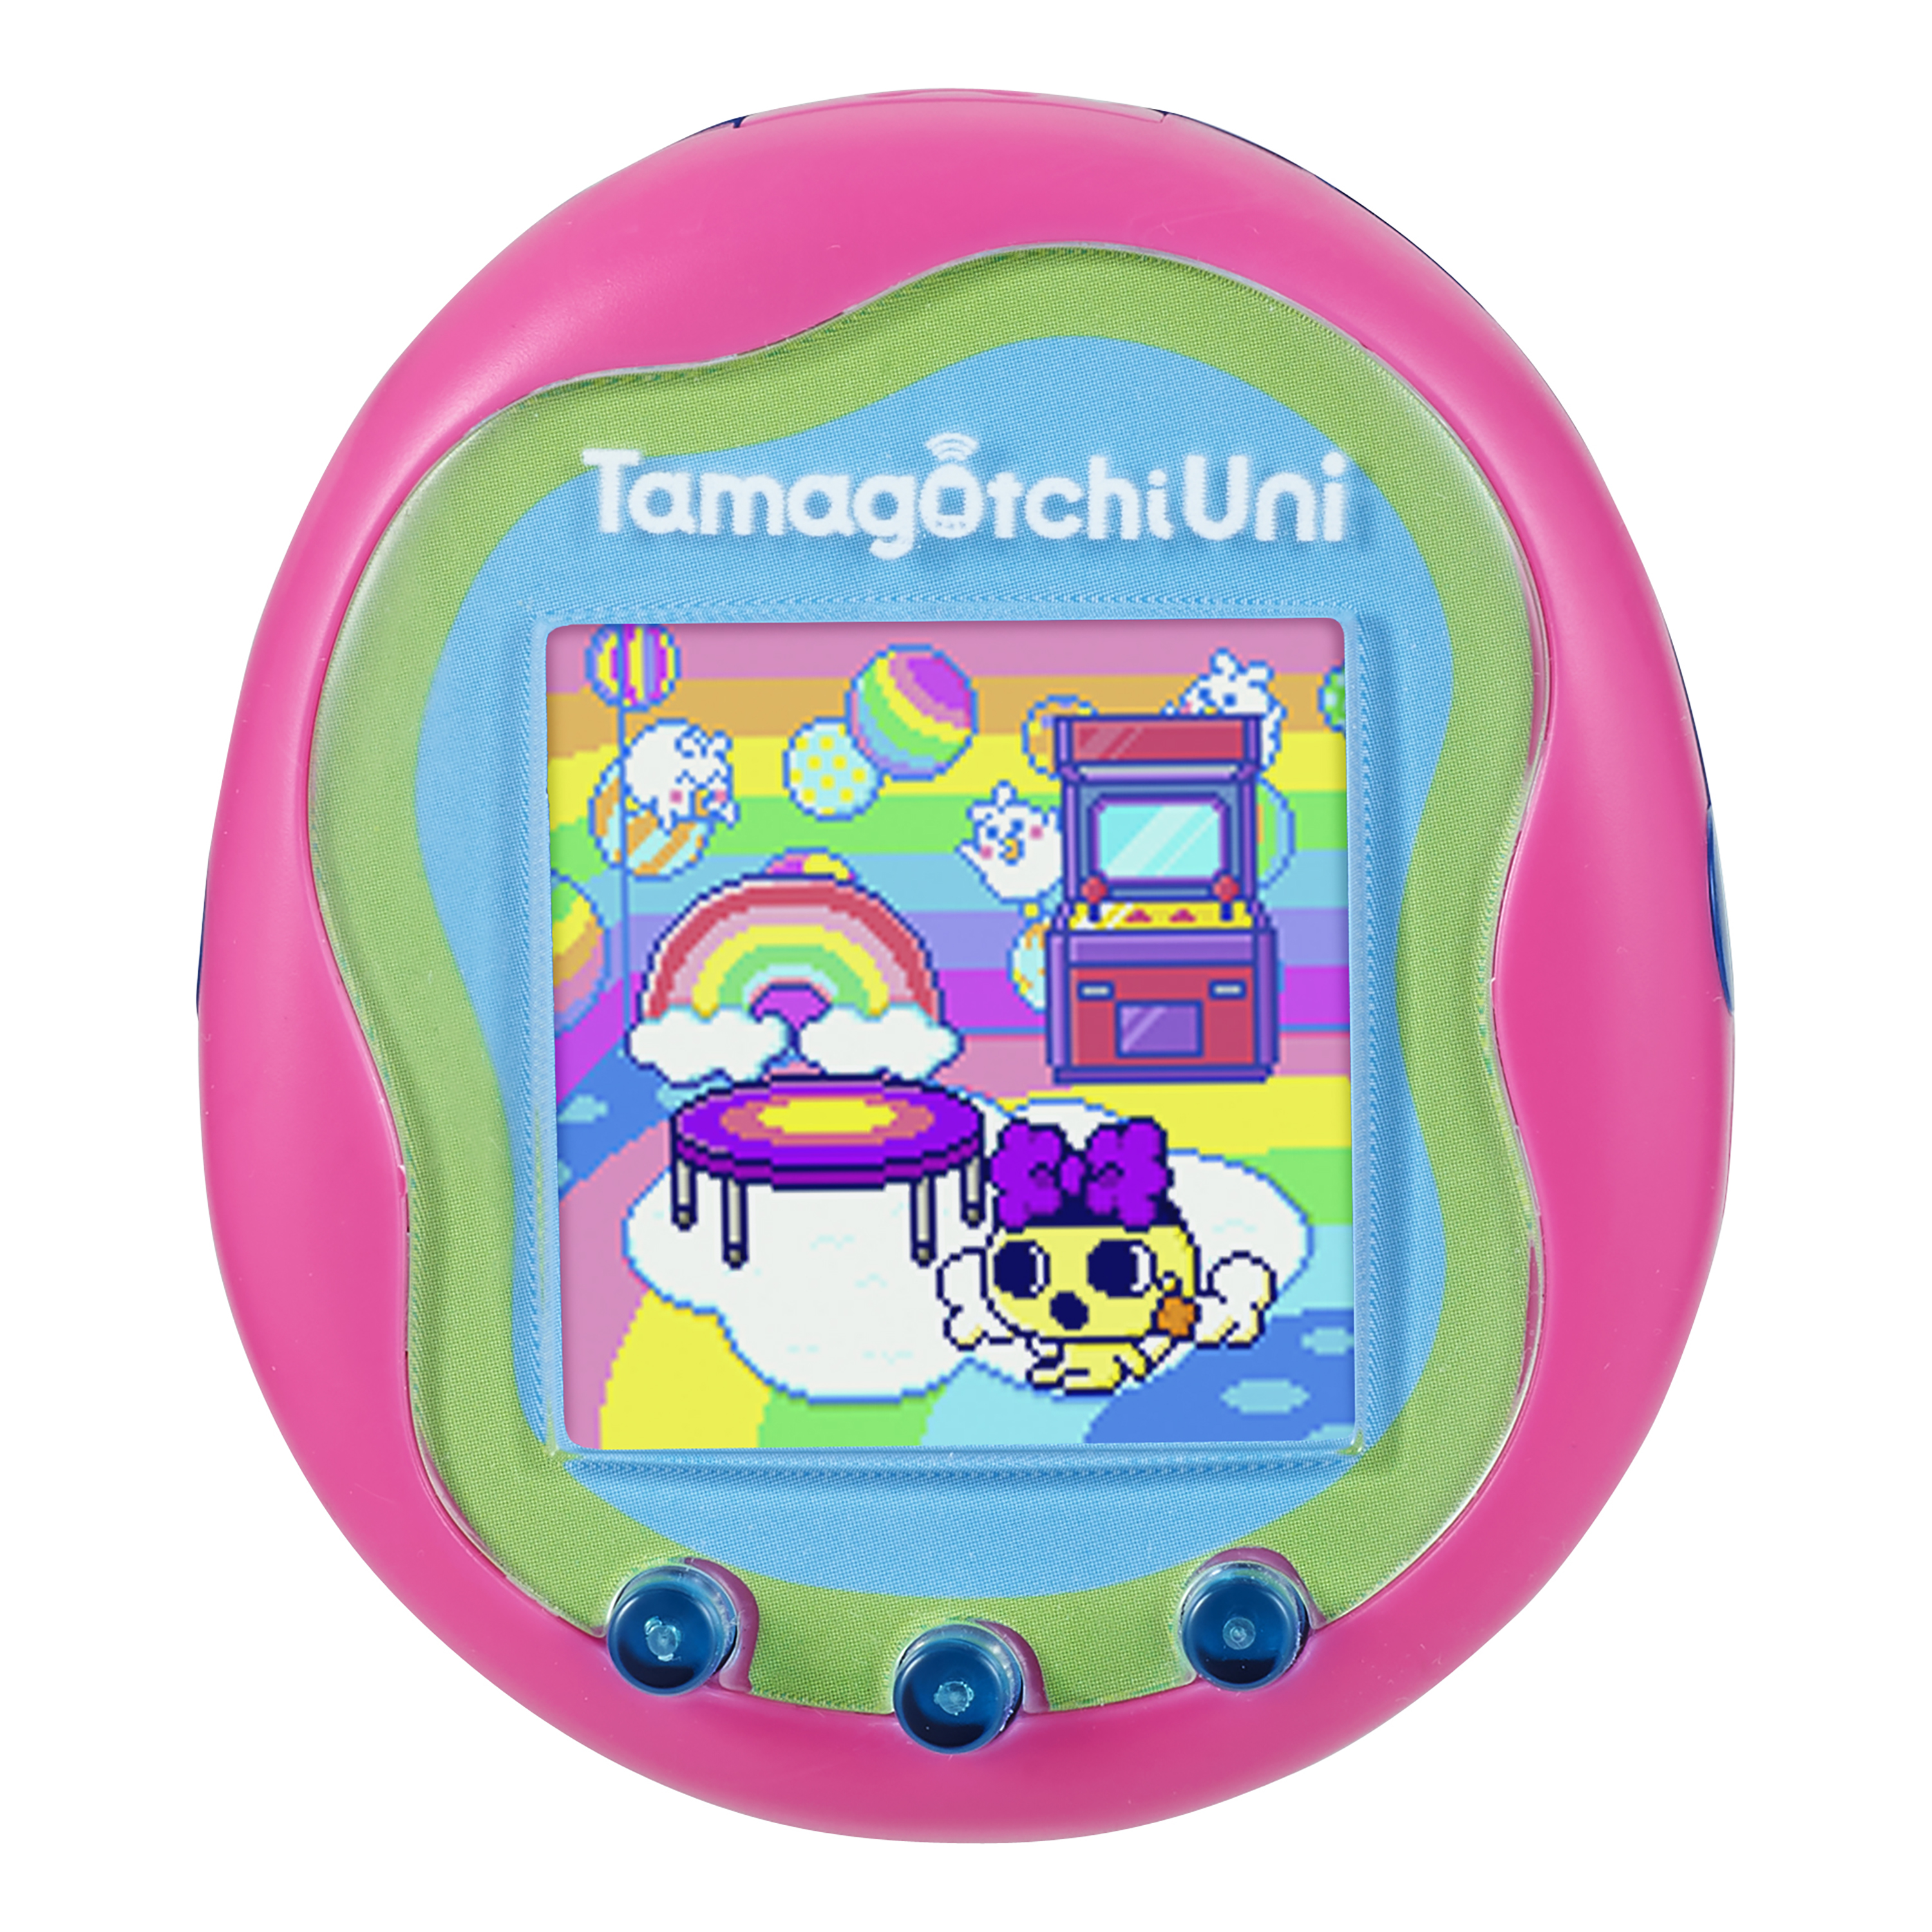 Customized my Tamagotchi Uni! : r/tamagotchi